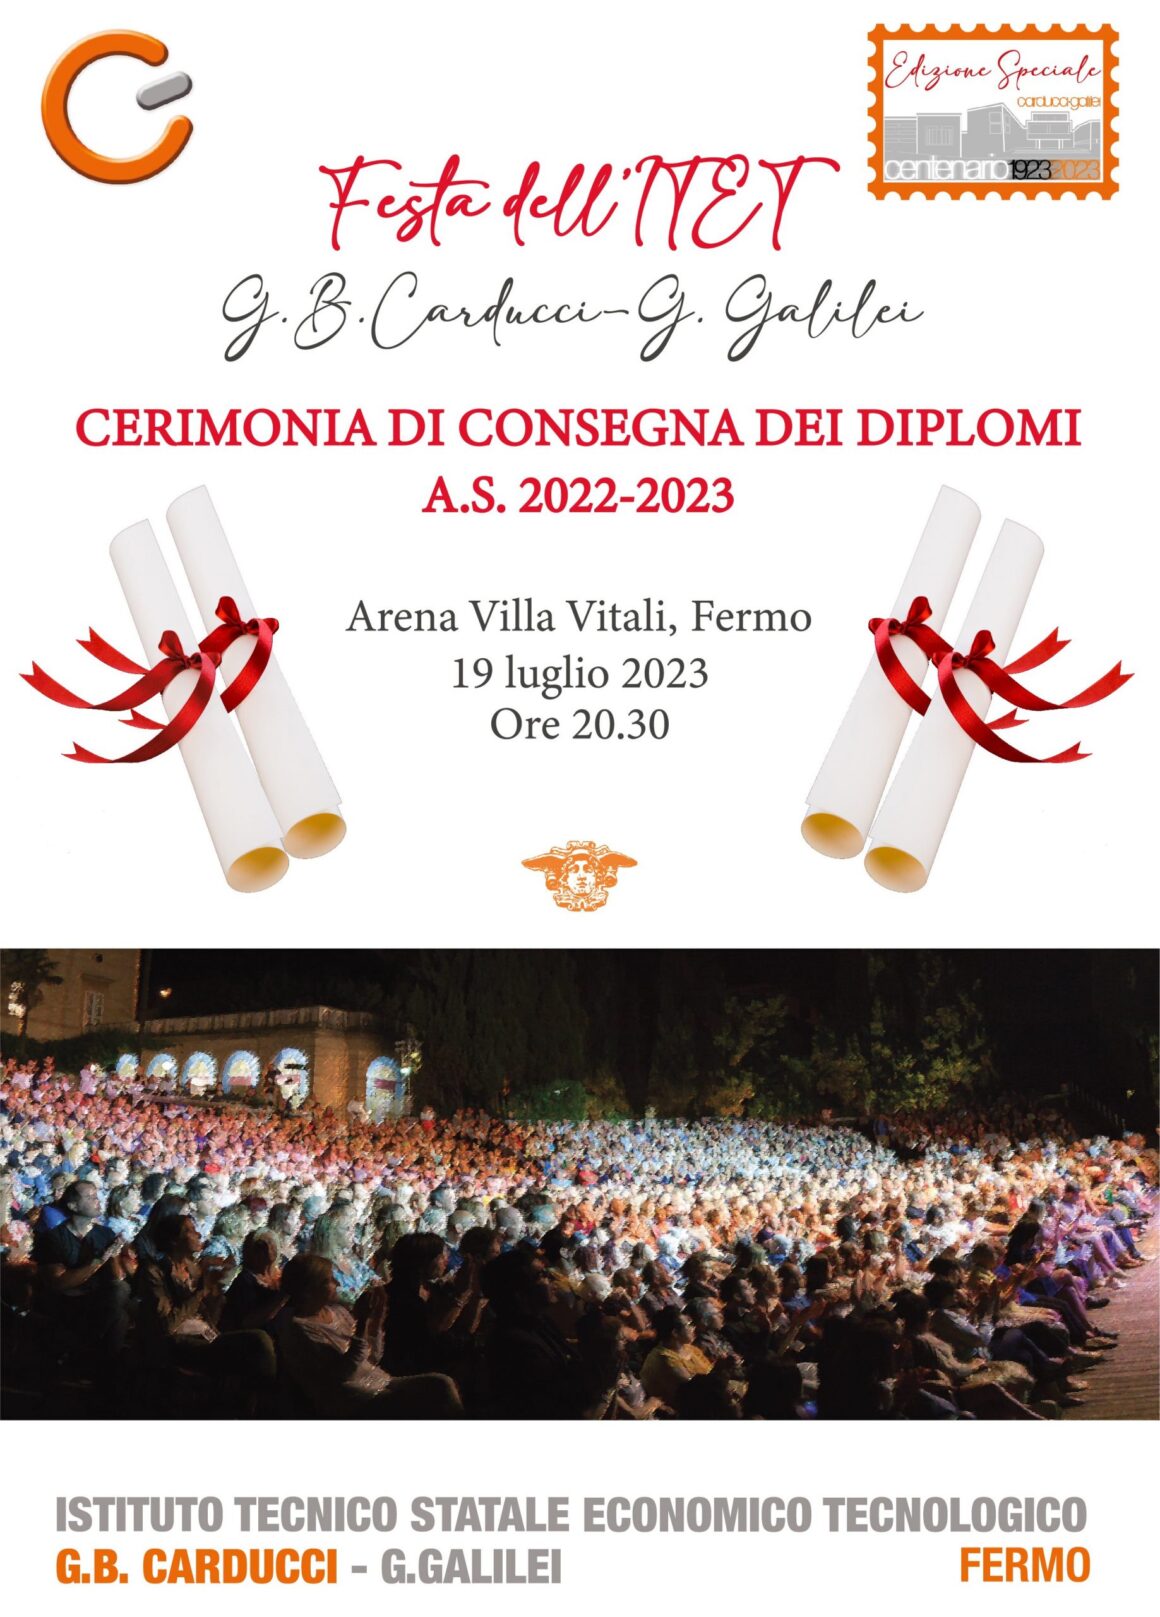 Itet Carducci-Galilei, mercoledì 19 luglio la cerimonia diconsegna dei diplomi a Villa Vitali